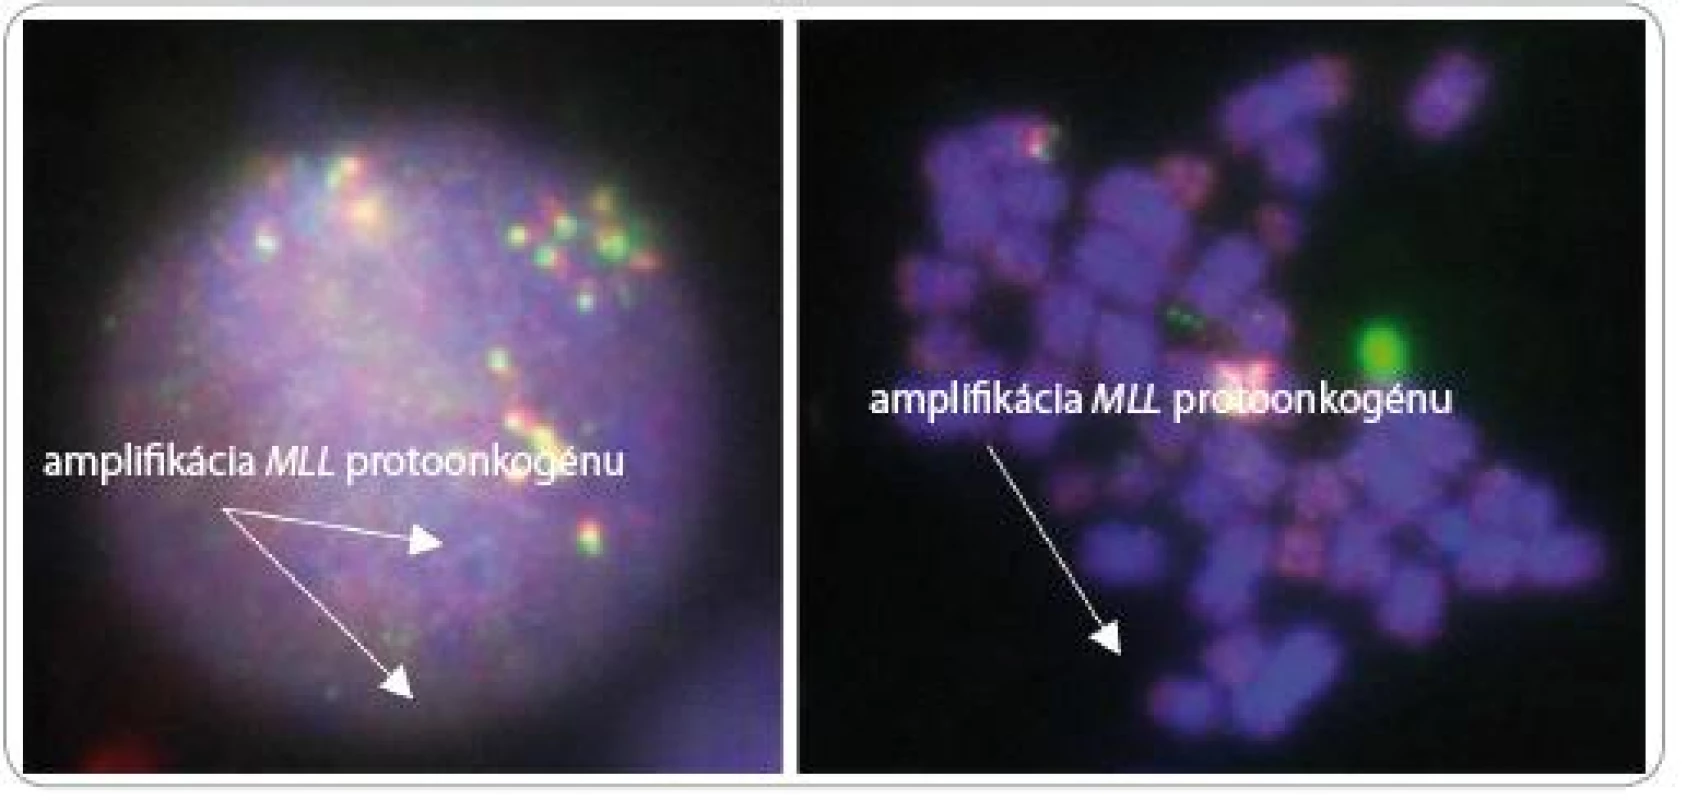 Výsledok fluorescenčnej analýzy získaný CCD kamerou. Vľavo interfázne jadro, vpravo mitóza. Amplifikácia MLL (9 kópií) u pacienta s karyotypom 44, XY, -5, hsr(11)(q23), -18, +21, +mar (C).